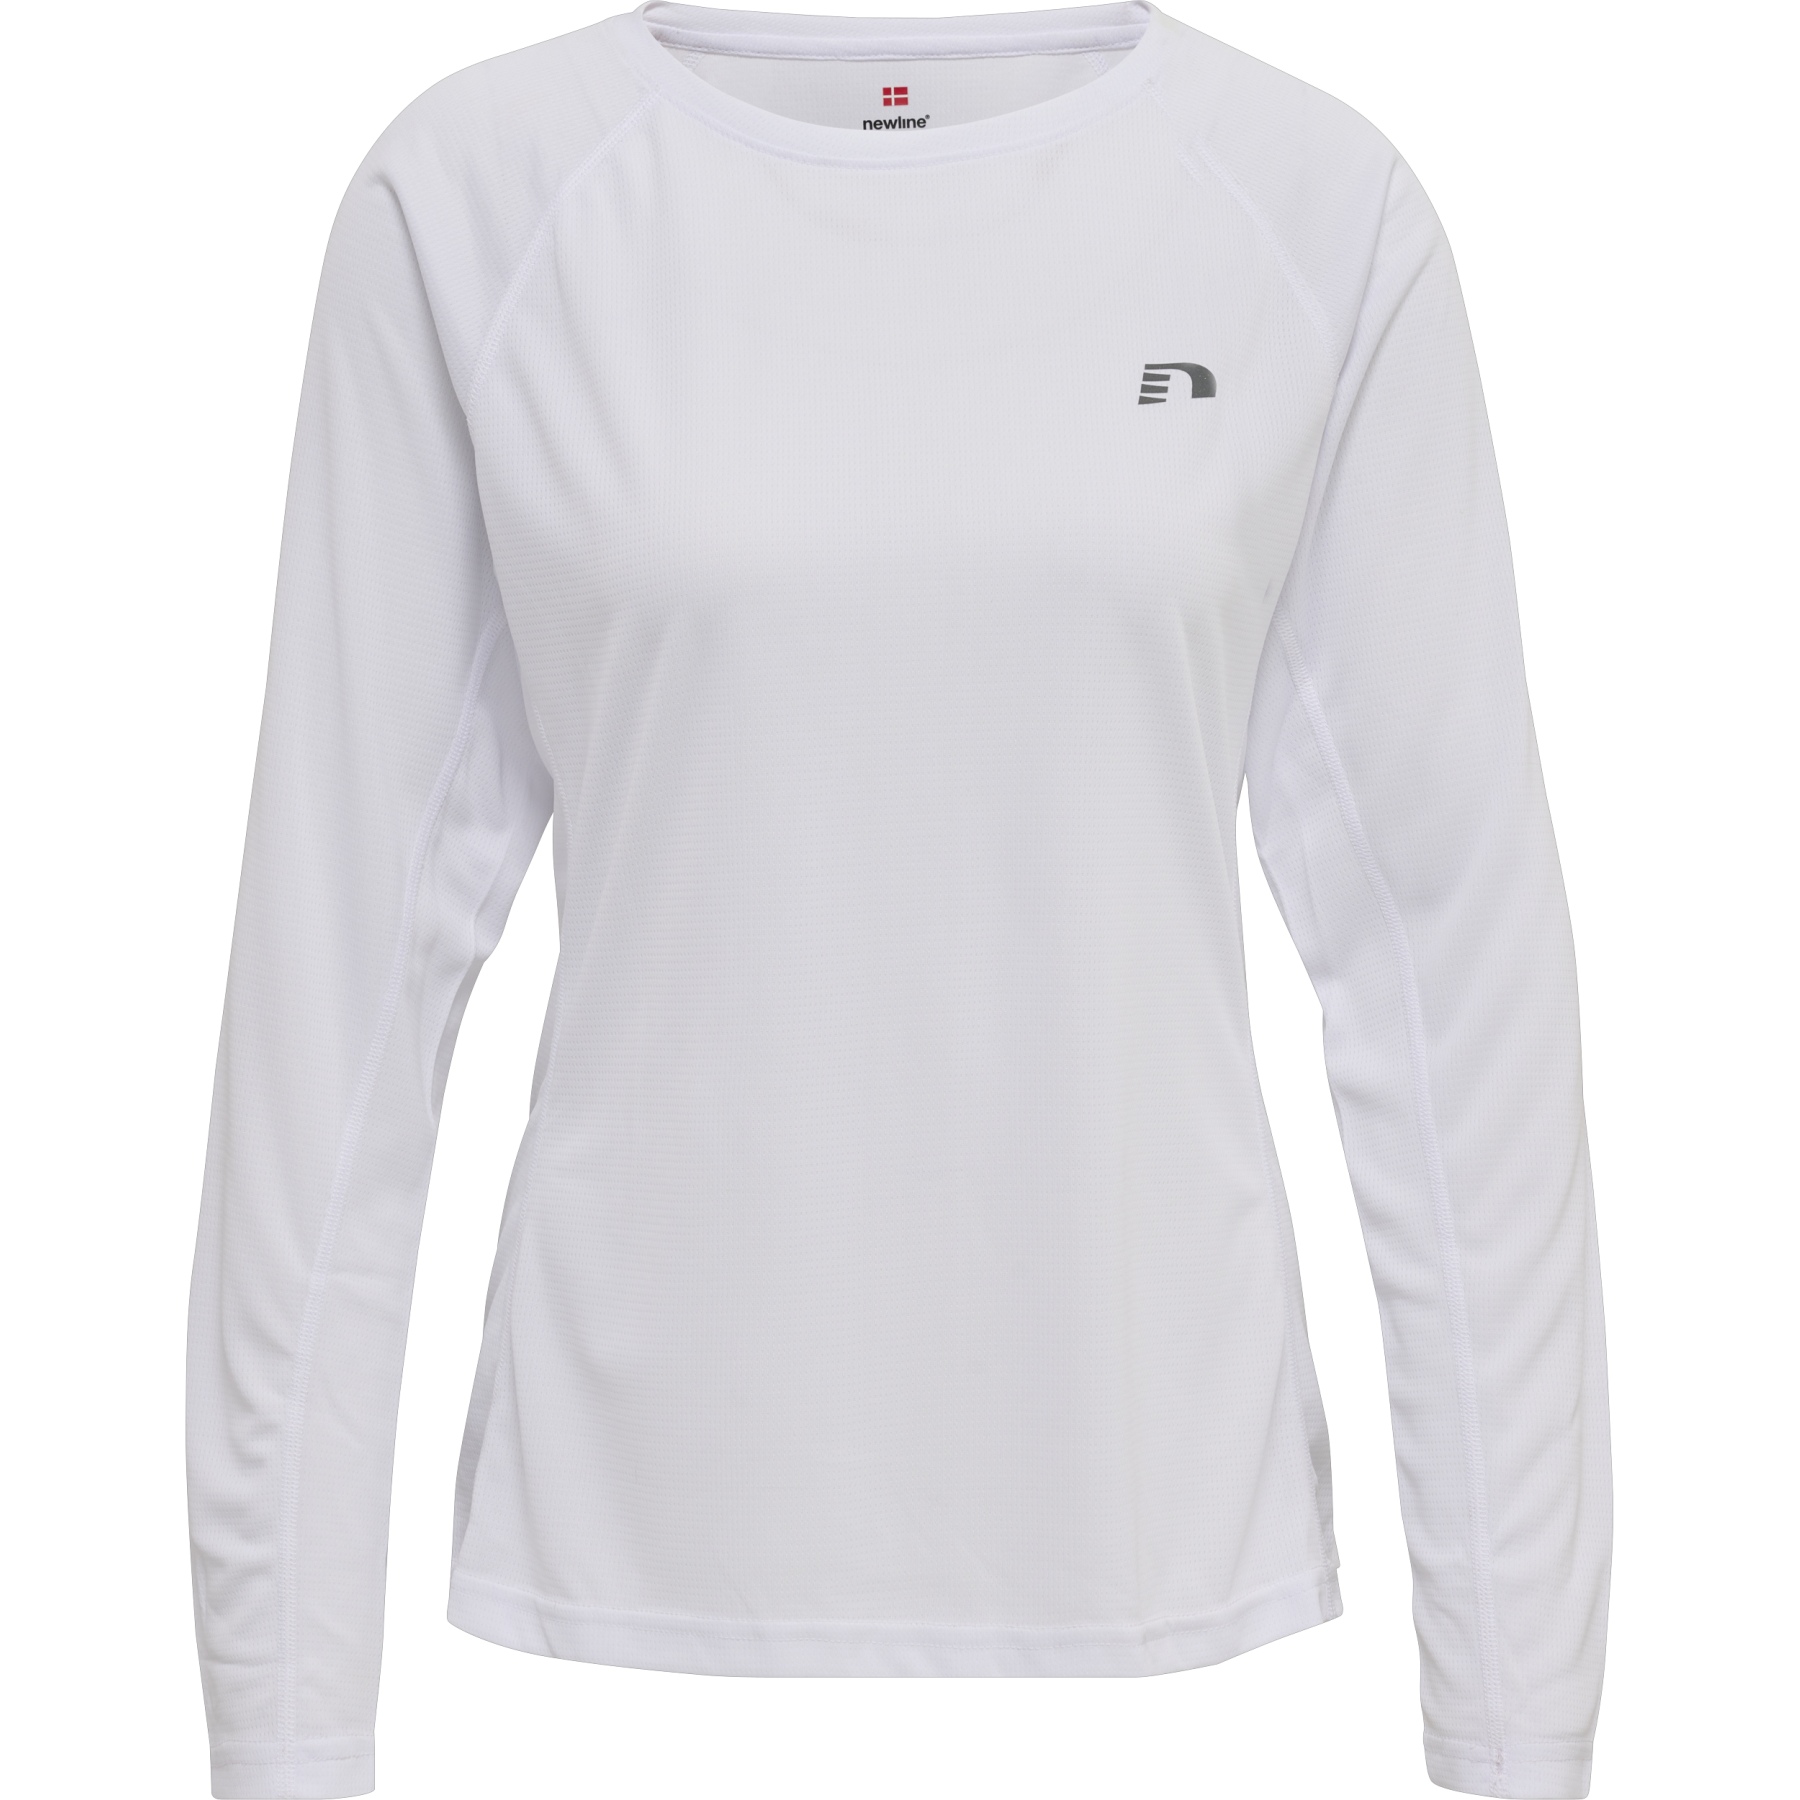 Produktbild von Newline Core Running Langarmshirt Damen - weiß